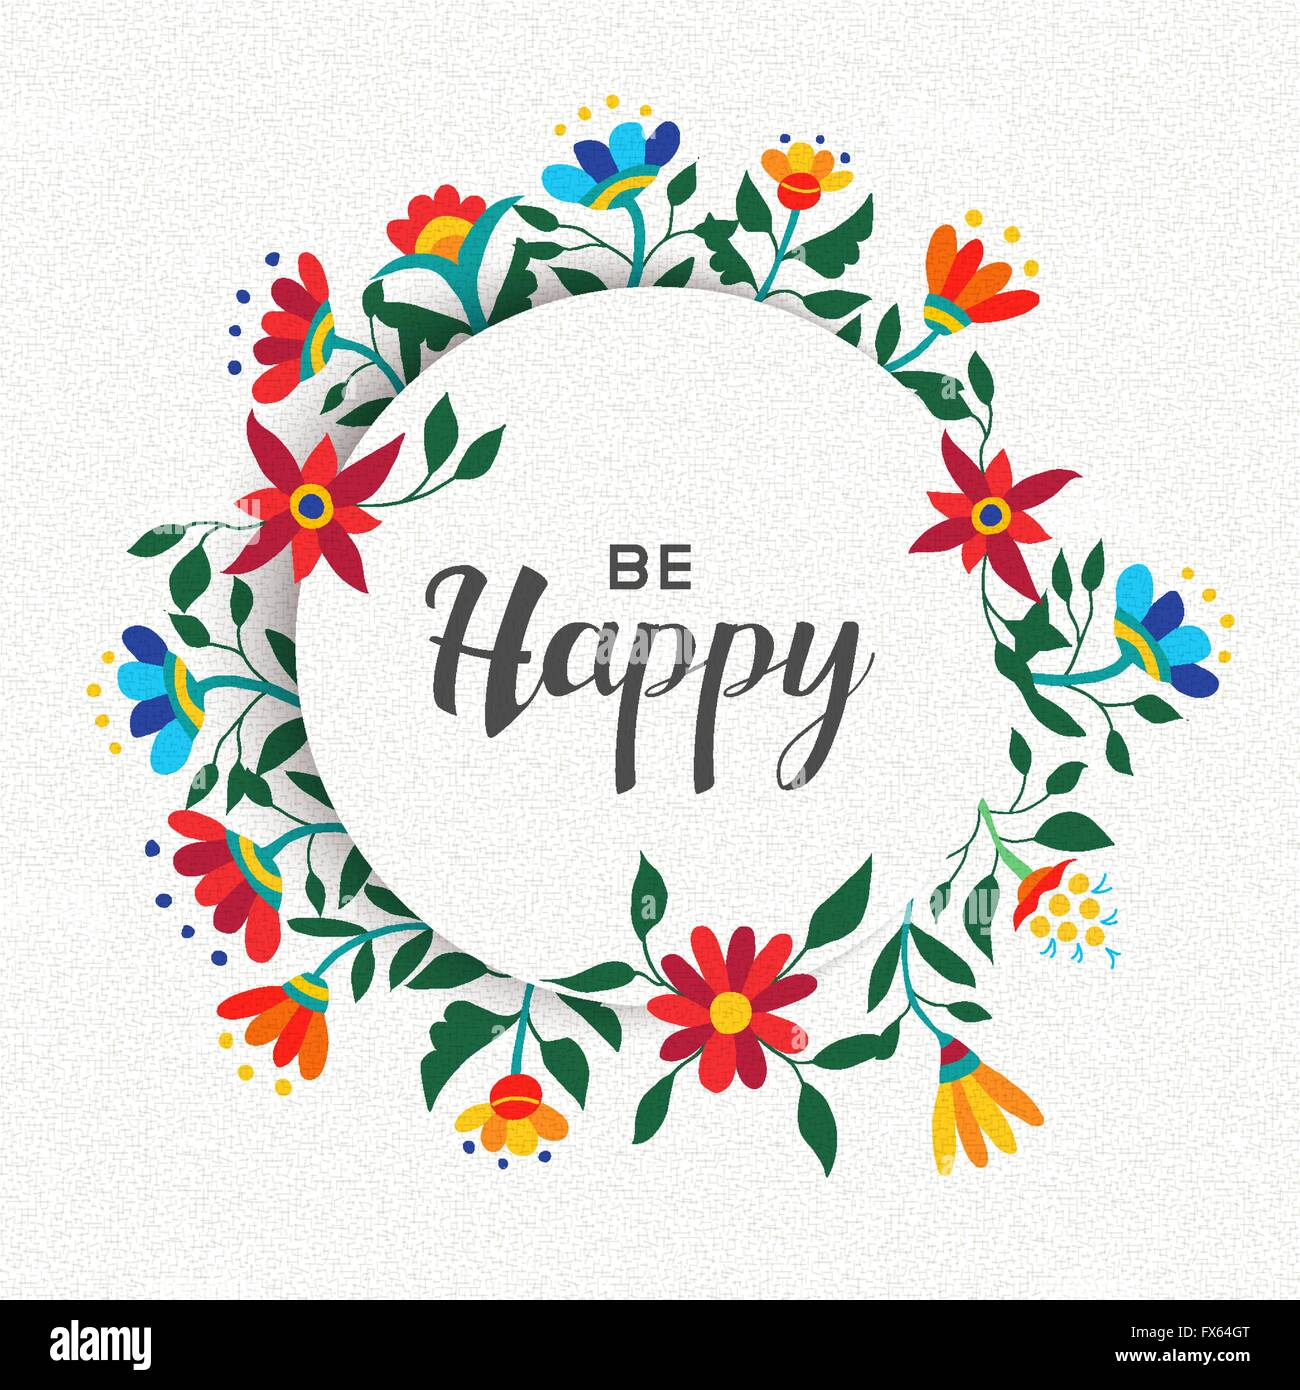 Werden Sie glücklich Zitat Plakatgestaltung, positiven Inspiration Nachricht mit Frühling Zeit Kranz Blumendekoration. EPS10 Vektor. Stock Vektor